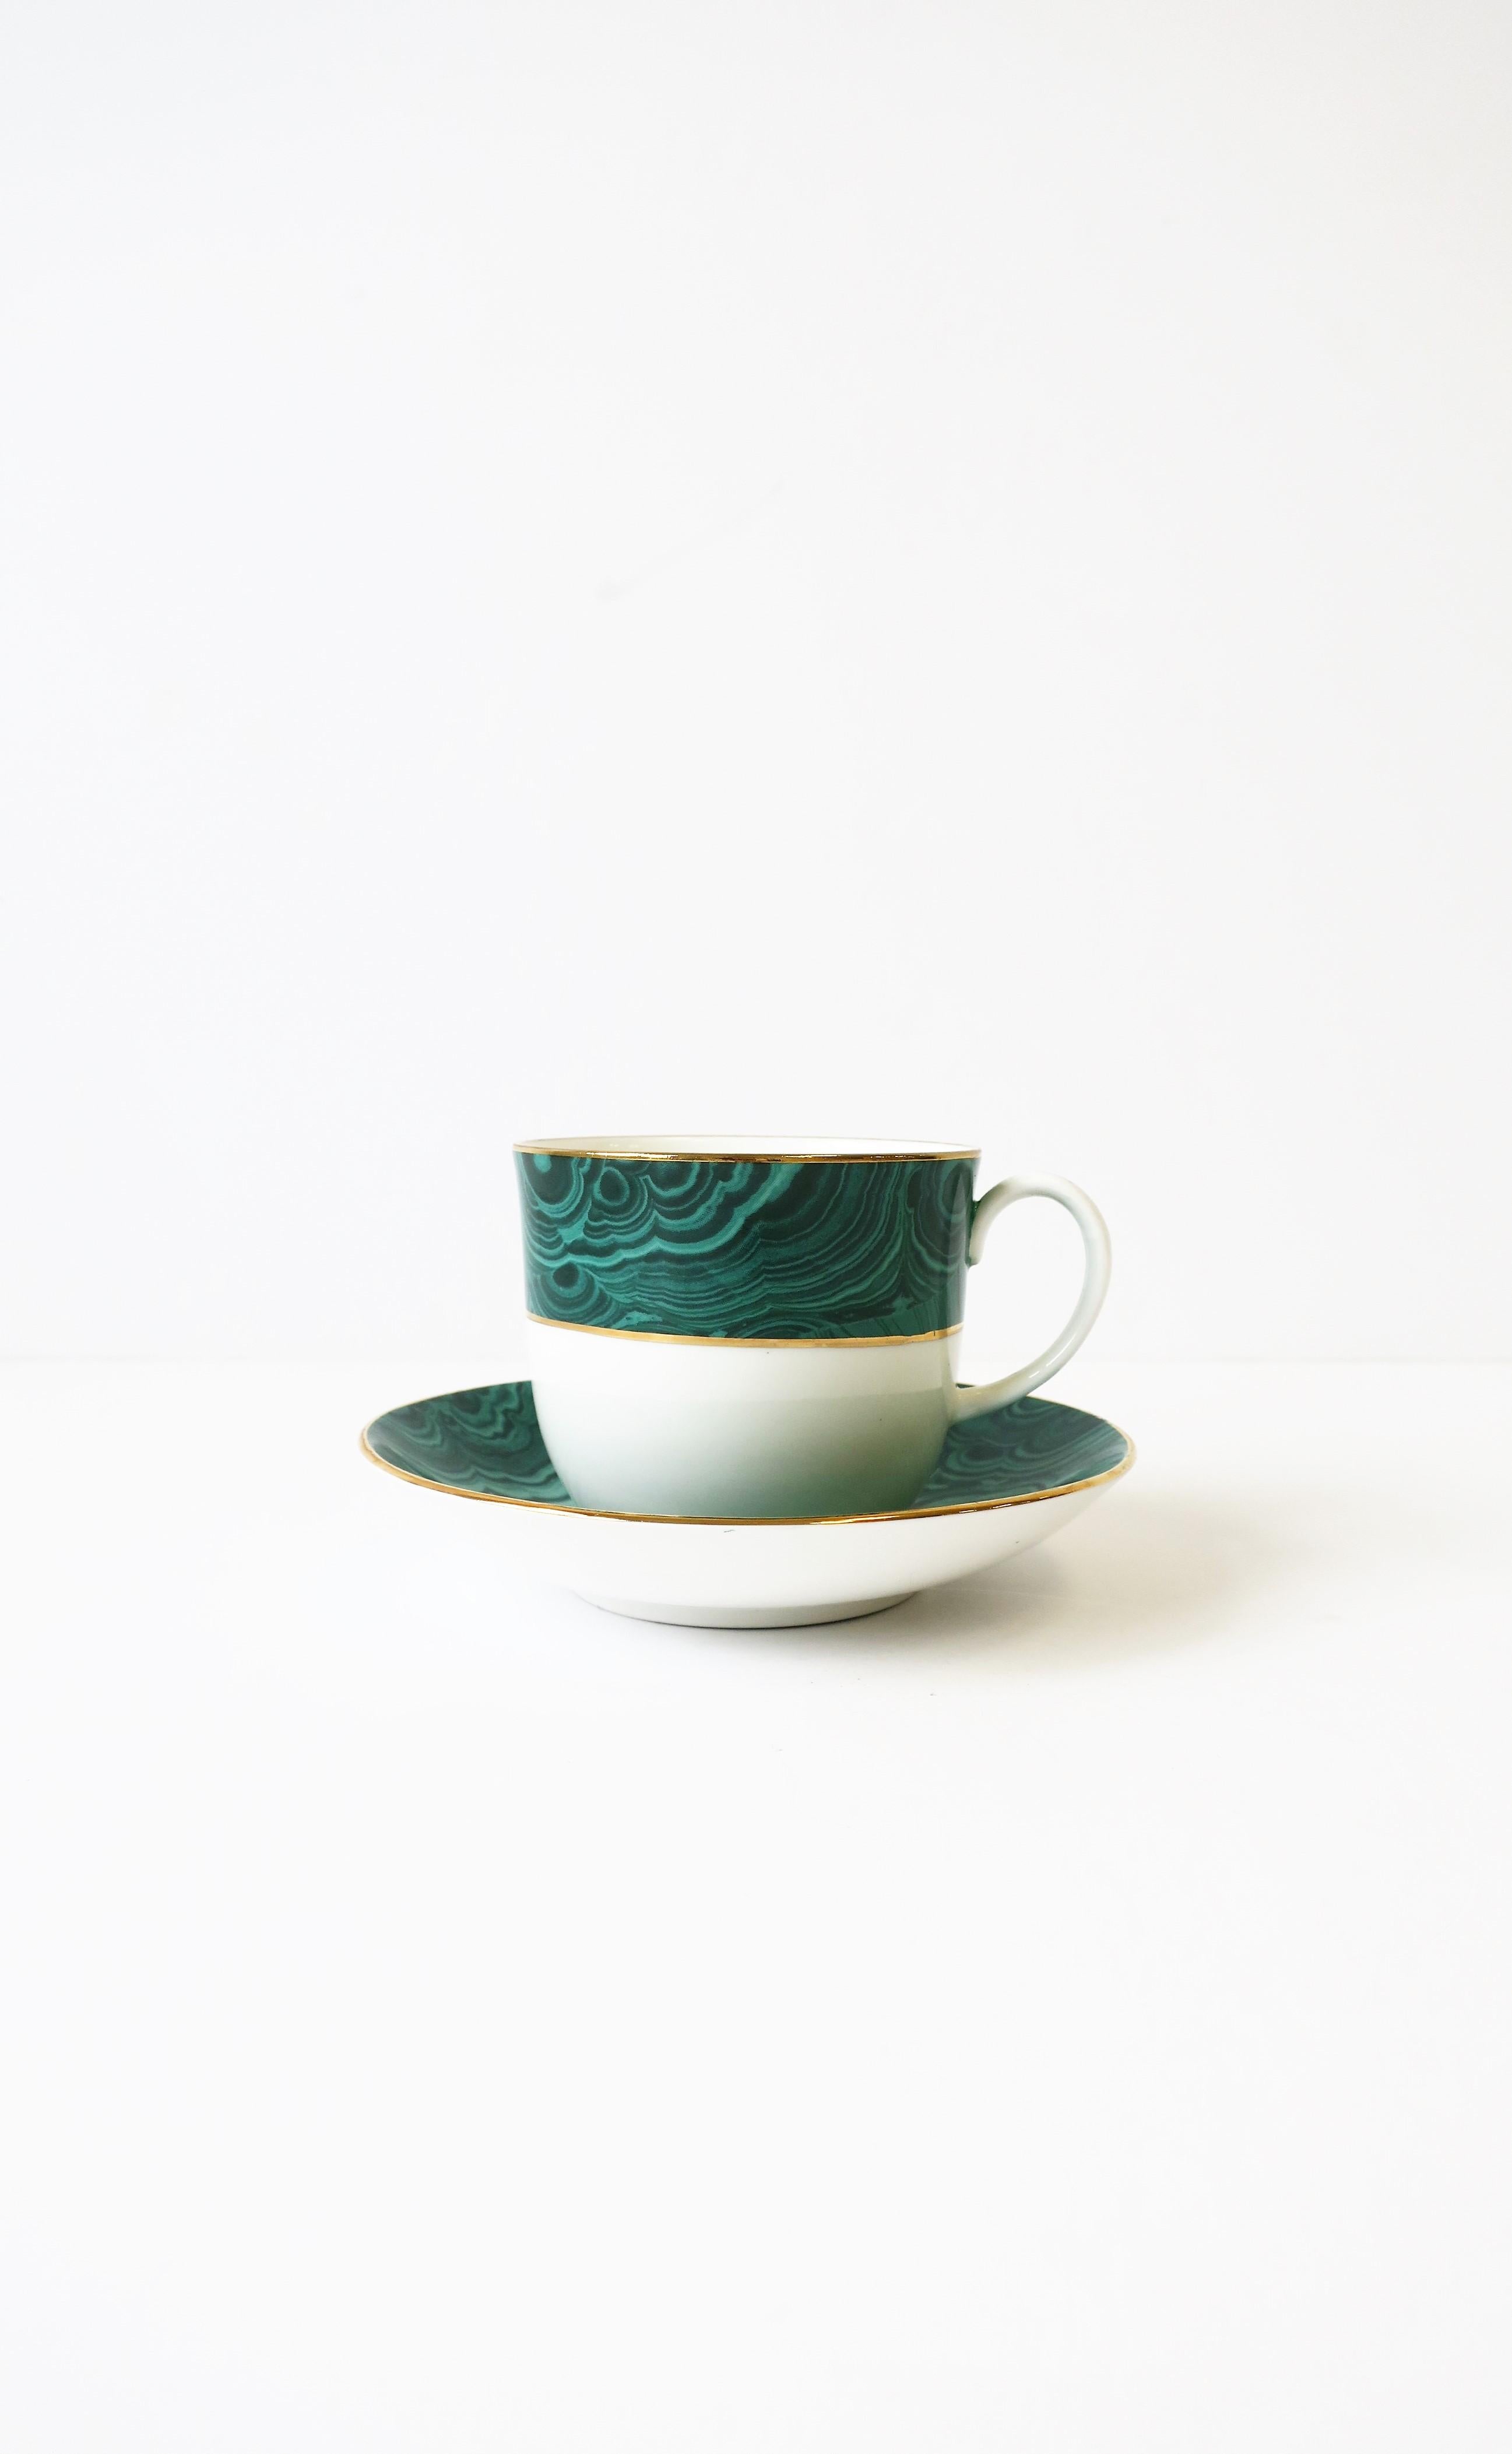 Une belle tasse et soucoupe à café ou thé en porcelaine blanche anglaise avec un motif de malachite verte et un détail doré sur le bord. Fabriqué en Angleterre. Deux ensembles disponibles, chacun vendu séparément selon la liste.

Les tables gigognes